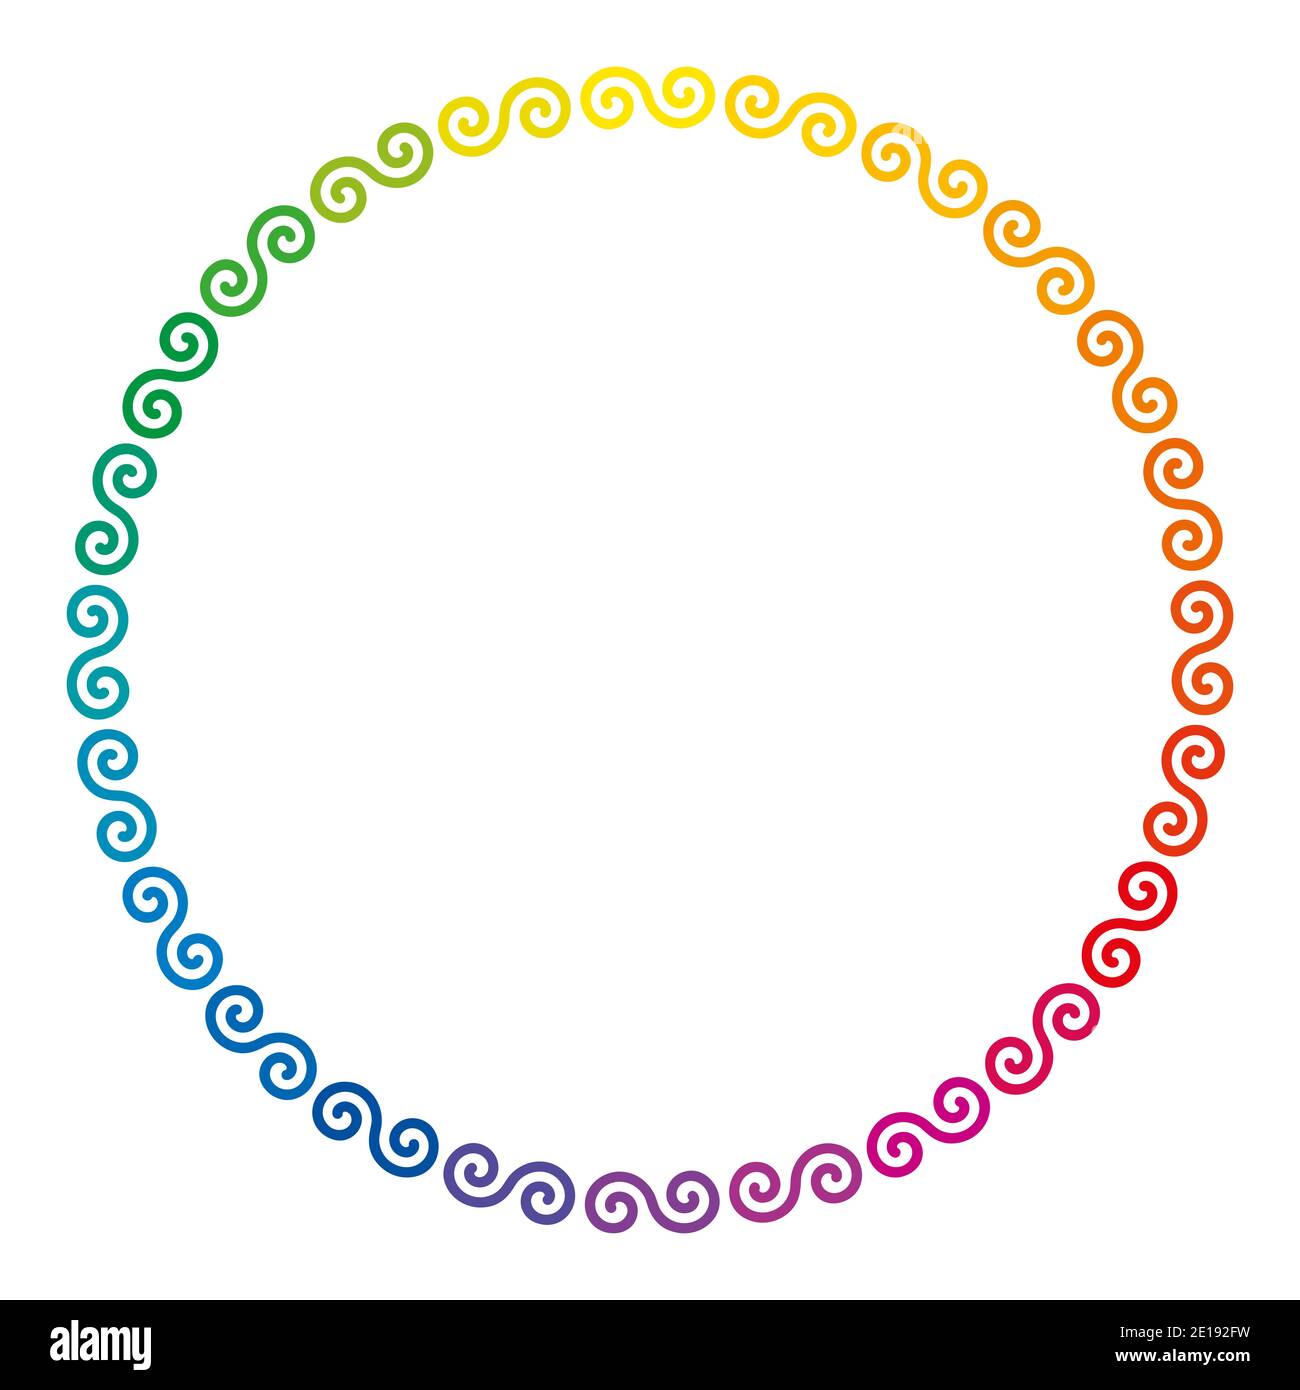 Regenbogen gefärbte keltische Doppelspiralen, die einen kreisförmigen Rahmen bilden. Farbenfrohe Zierbordüre aus mehrfarbigen Doppelspiralen. Stockfoto